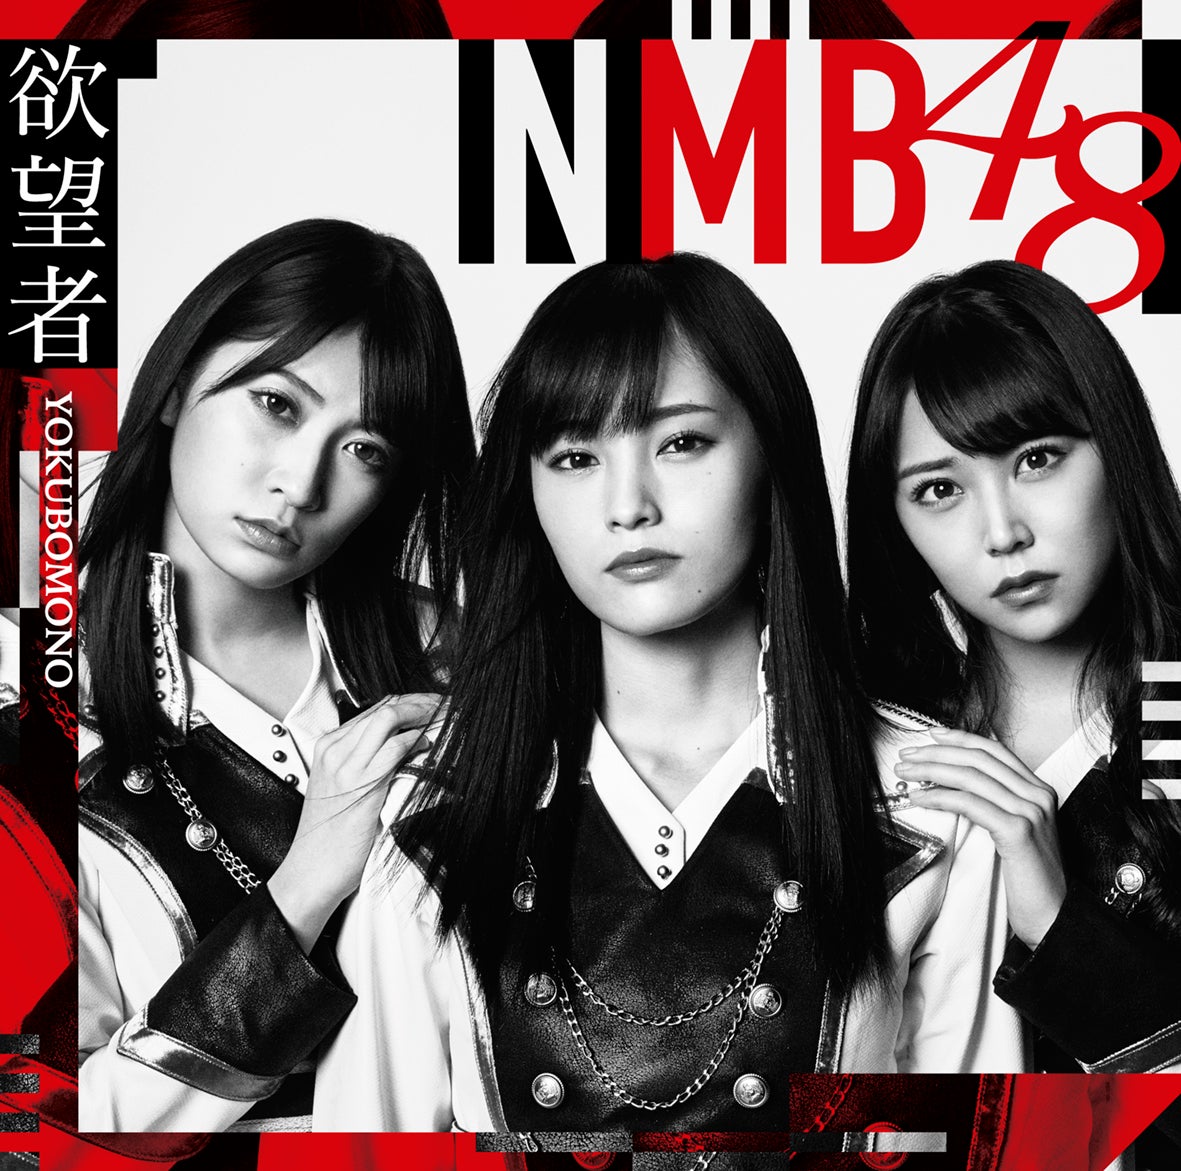 NMB48、初の試みで徹底網羅 ファン投票も開催決定 - モデルプレス